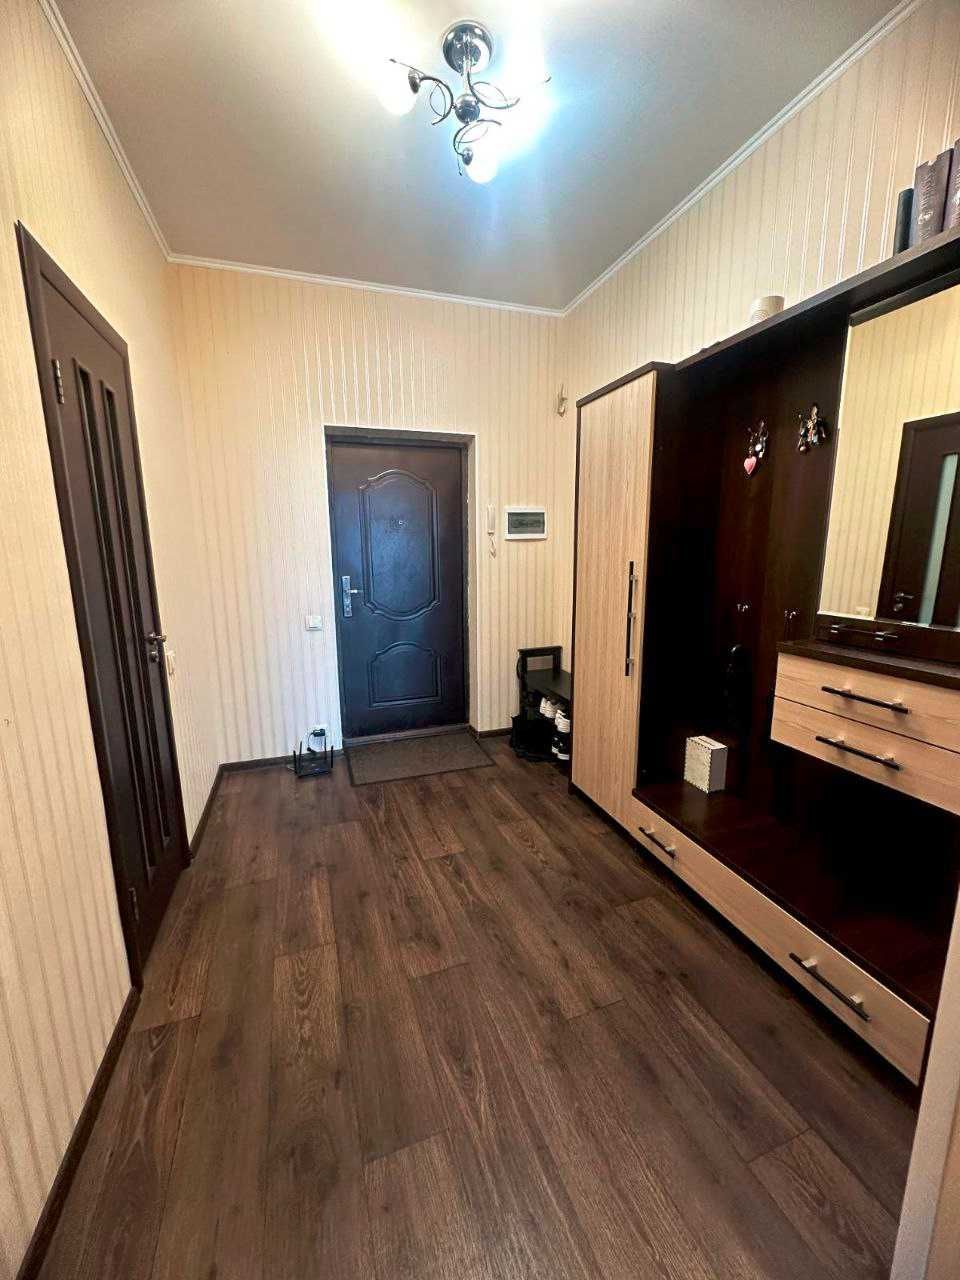 Продам 1 кімнатну квартиру 56 м2, в новобудові ЖК Олексіївський